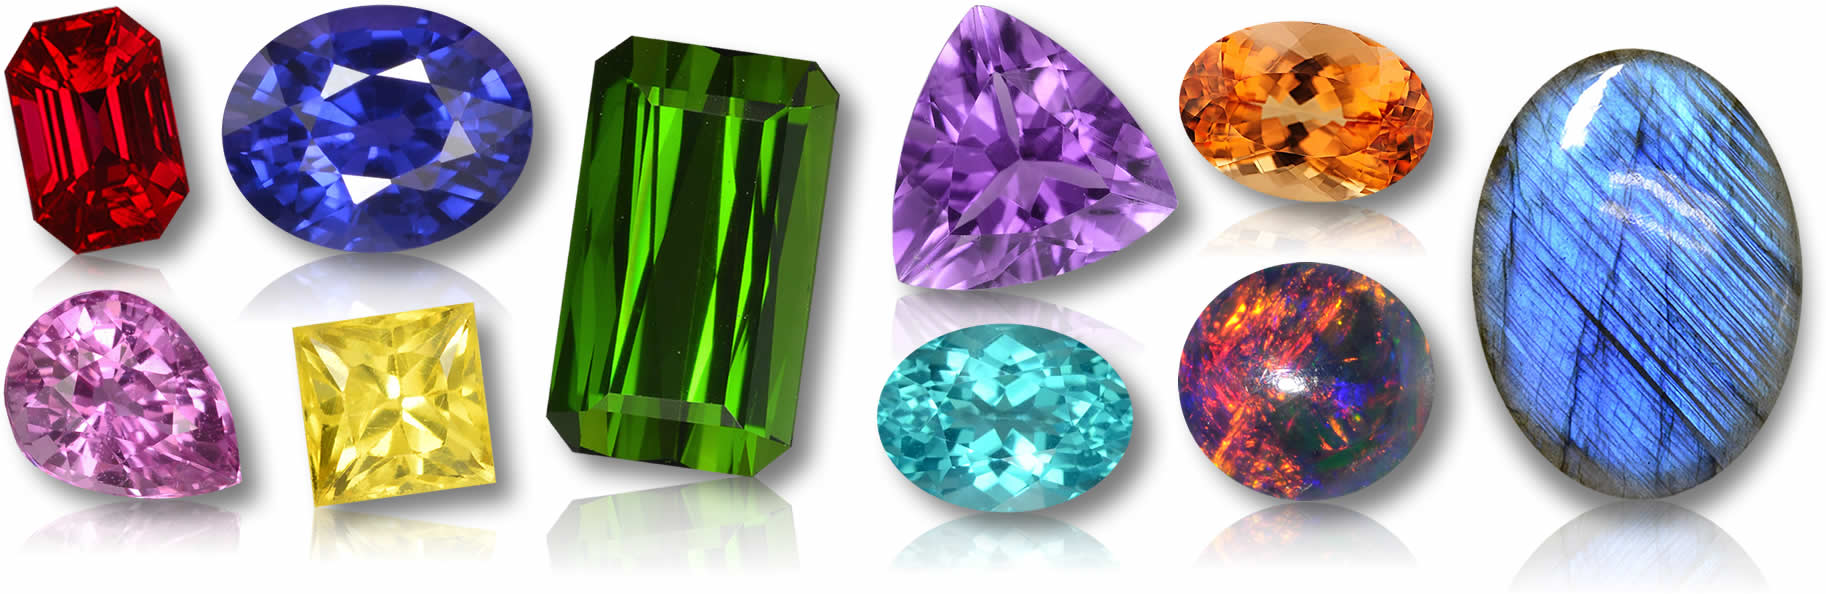 販売のための宝石 |天然石を世界中に発送